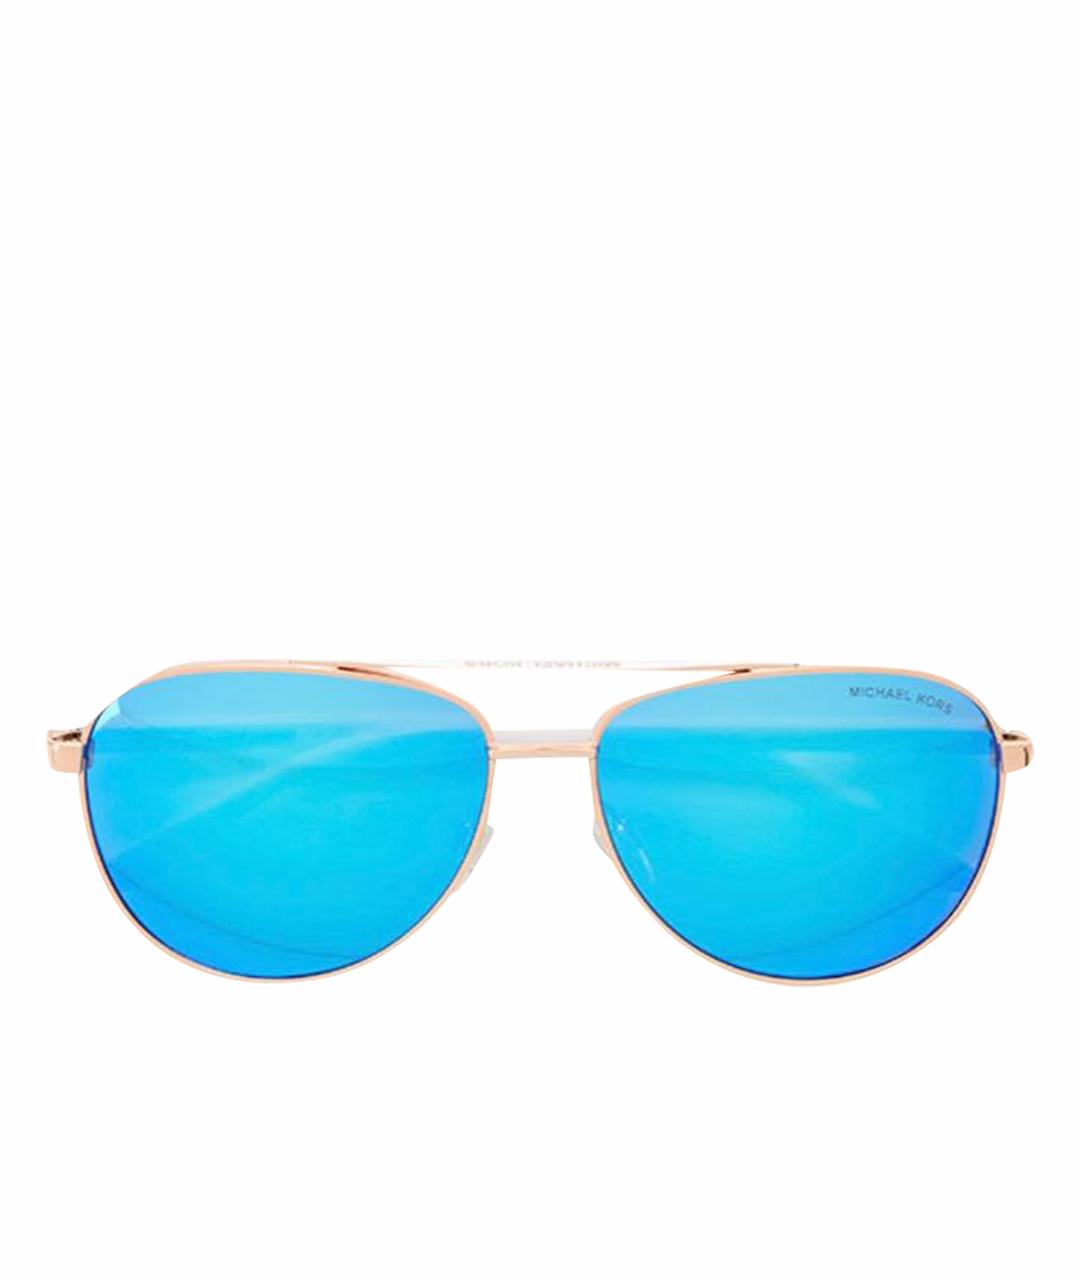 MICHAEL KORS Синие солнцезащитные очки, фото 1